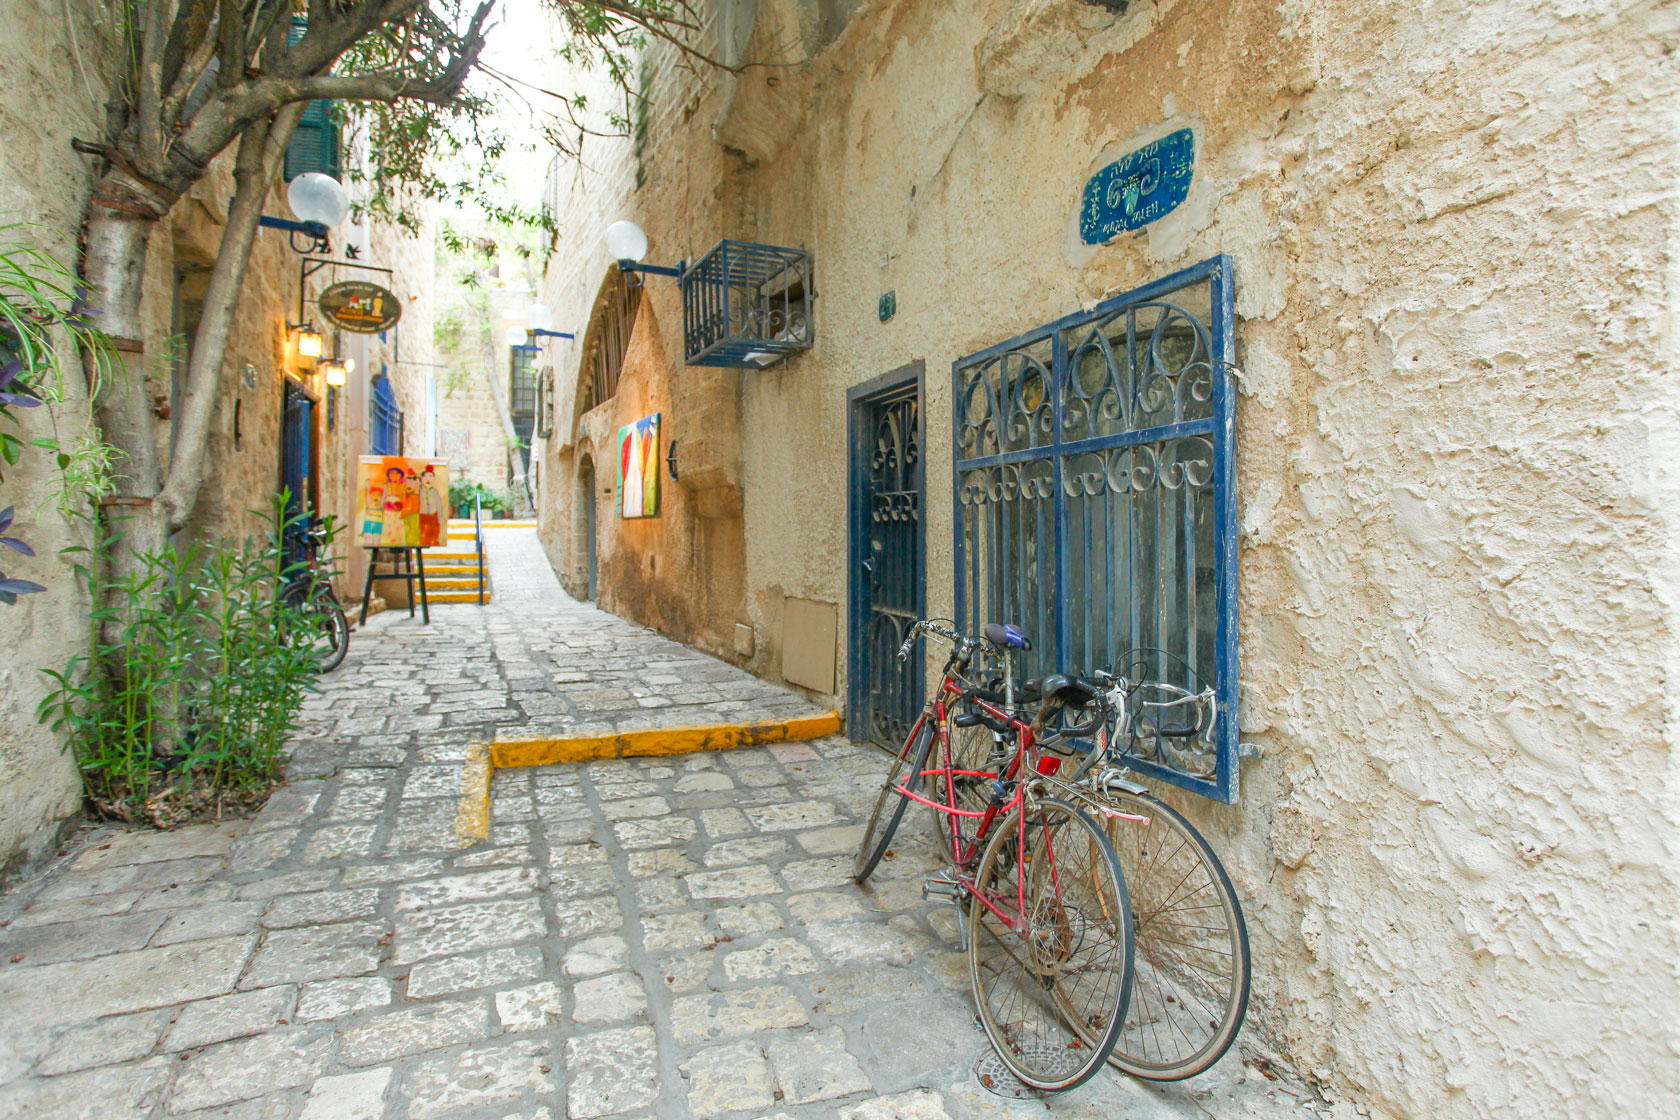 Typical alley in Jaffa, Tel Aviv